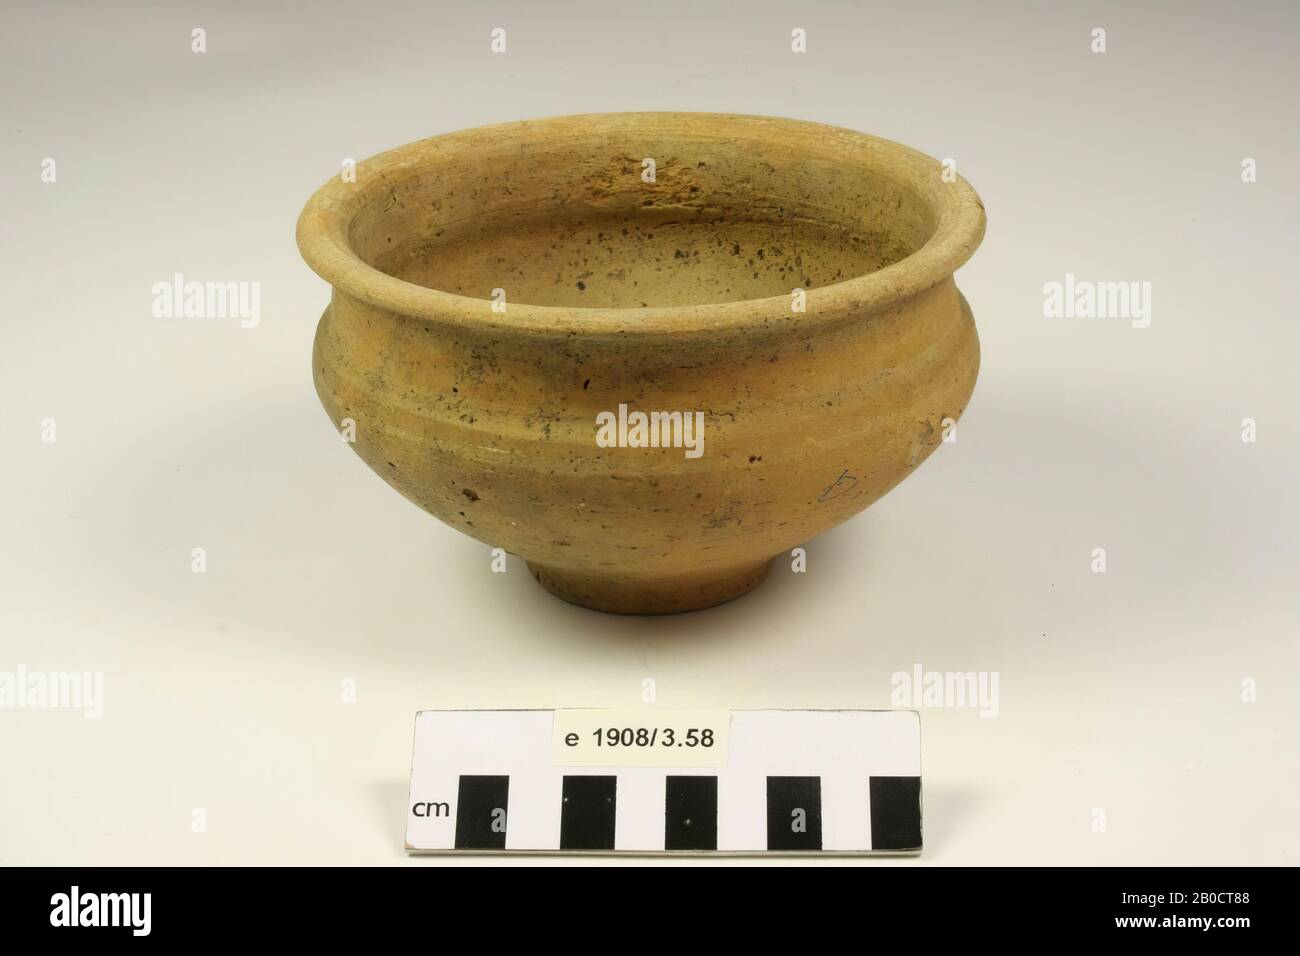 Bowl of earthenware. Contains cremated residues., Bowl, earthenware, h: 9.2 cm, diam: 15.6 cm, roman, Netherlands, Gelderland, Nijmegen, Nijmegen, Hees Stock Photo